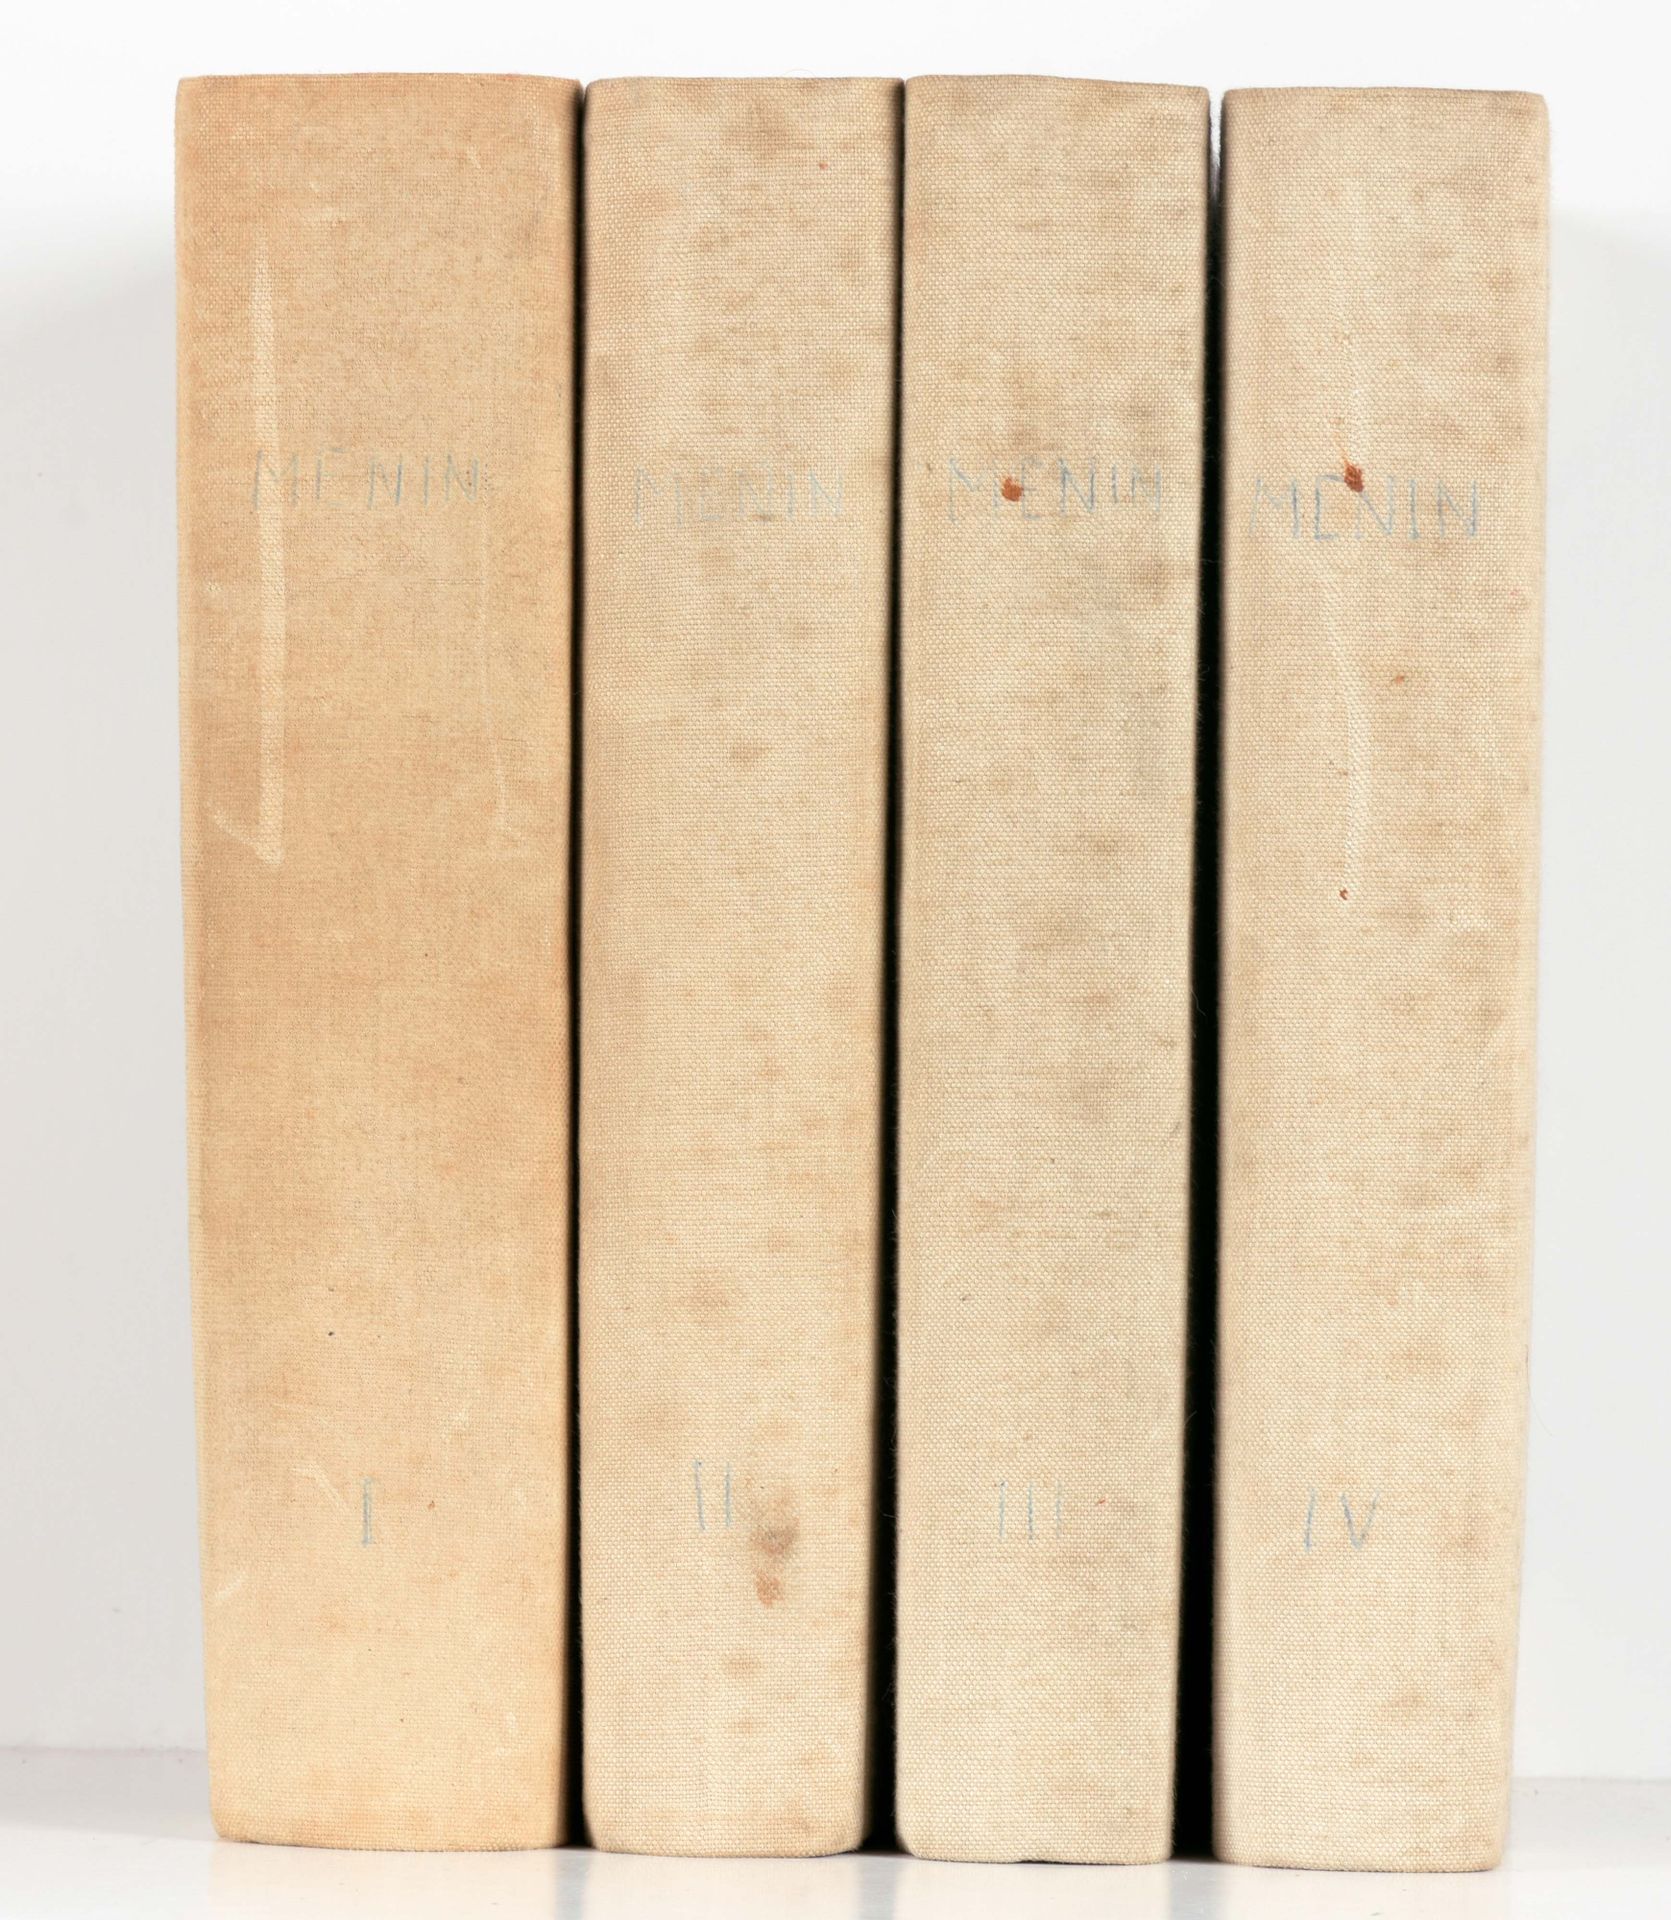 REMBRY-BARTH Historia de Menin según documentos auténticos

4 vols. In-8°, viii,&hellip;